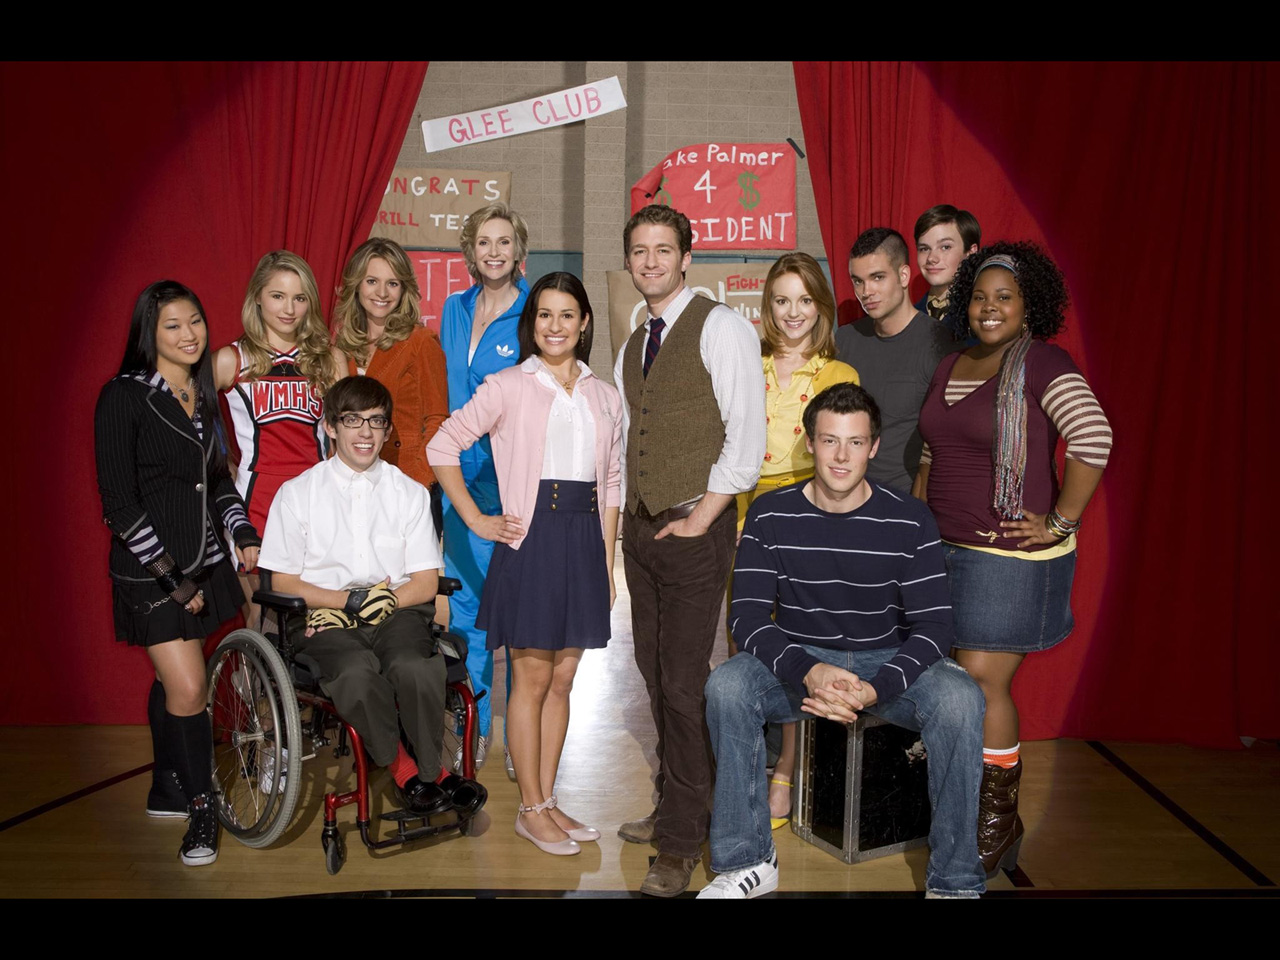 Desktop Wallpaper Of Glee Puter Image